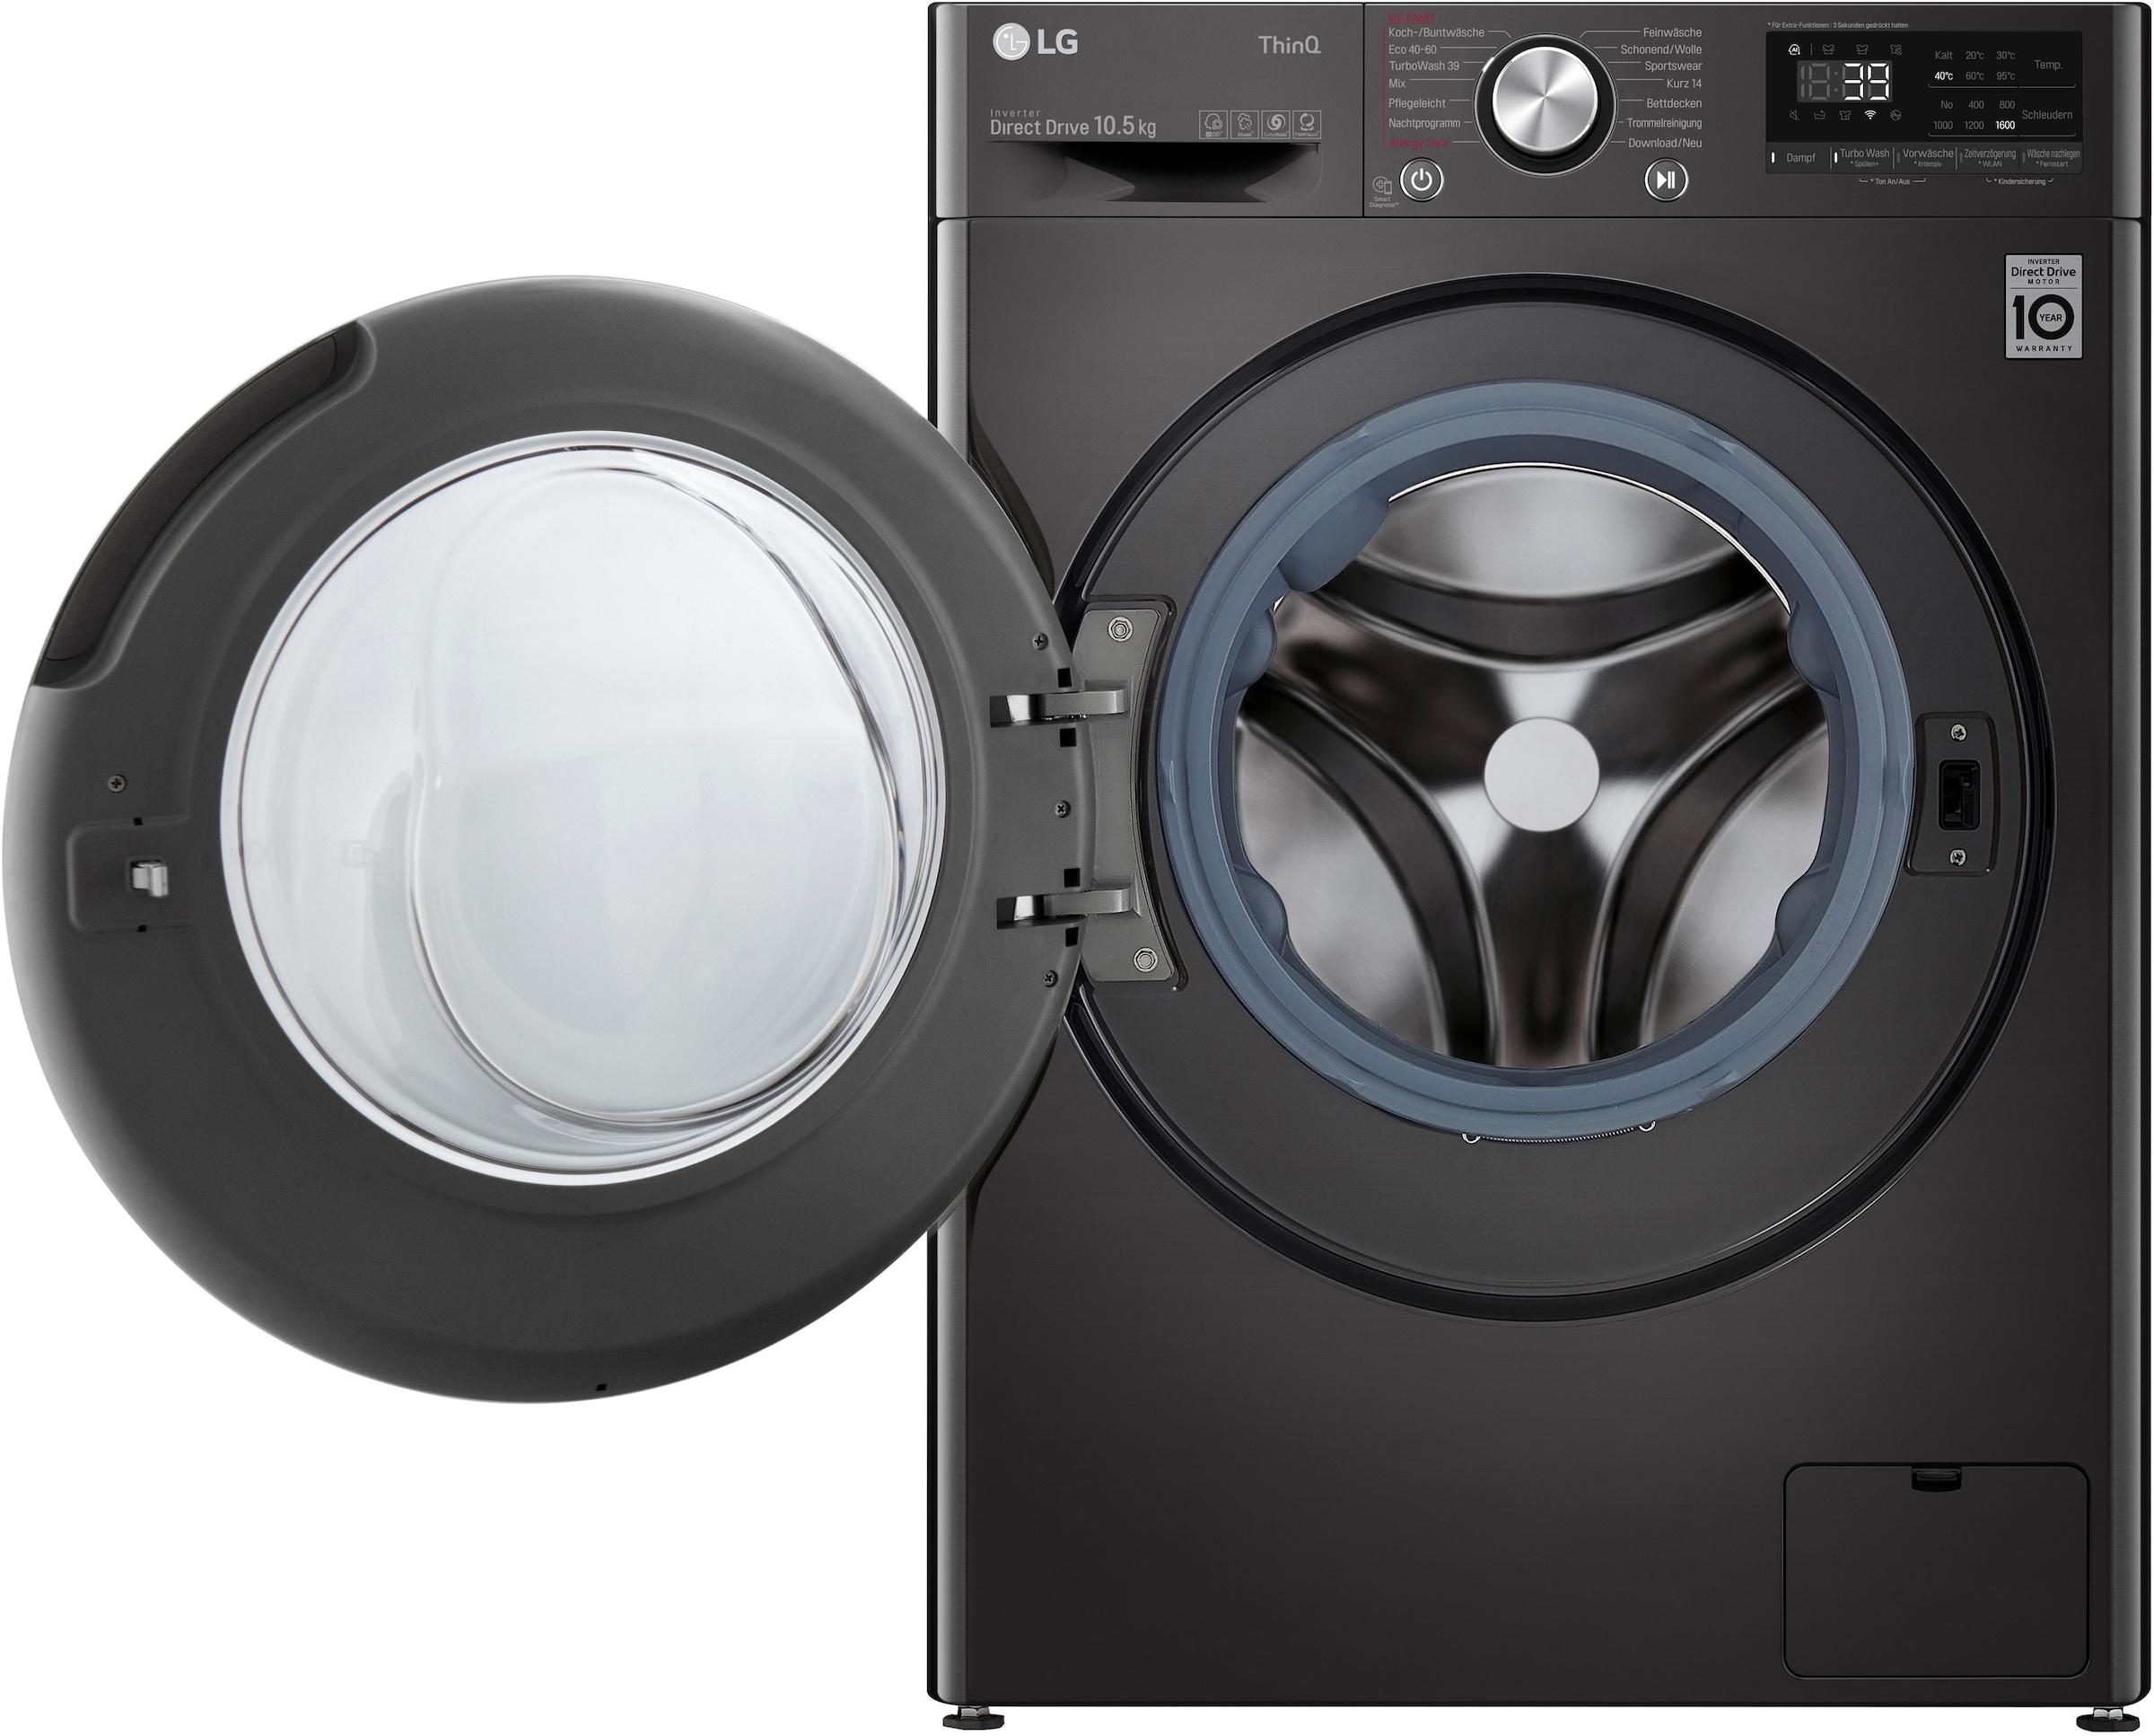 LG Waschmaschine »F6WV710P2S«, F6WV710P2S, 10,5 kg, 1600 U/min, TurboWash®  - Waschen in nur 39 Minuten im OTTO Online Shop